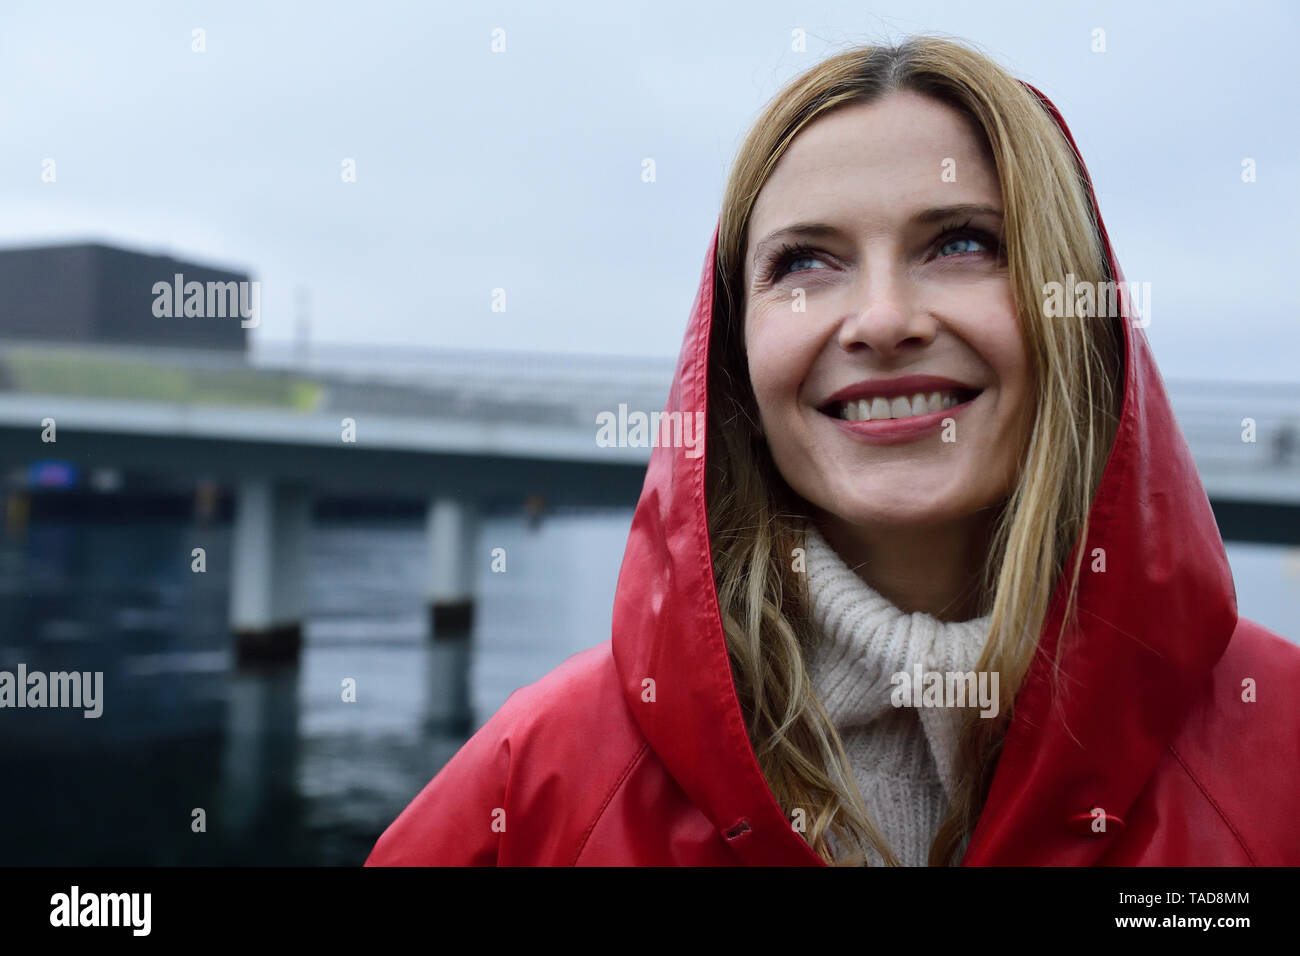 Danemark, copenhague, portrait de femme heureuse au bord de l'eau par temps de pluie Banque D'Images